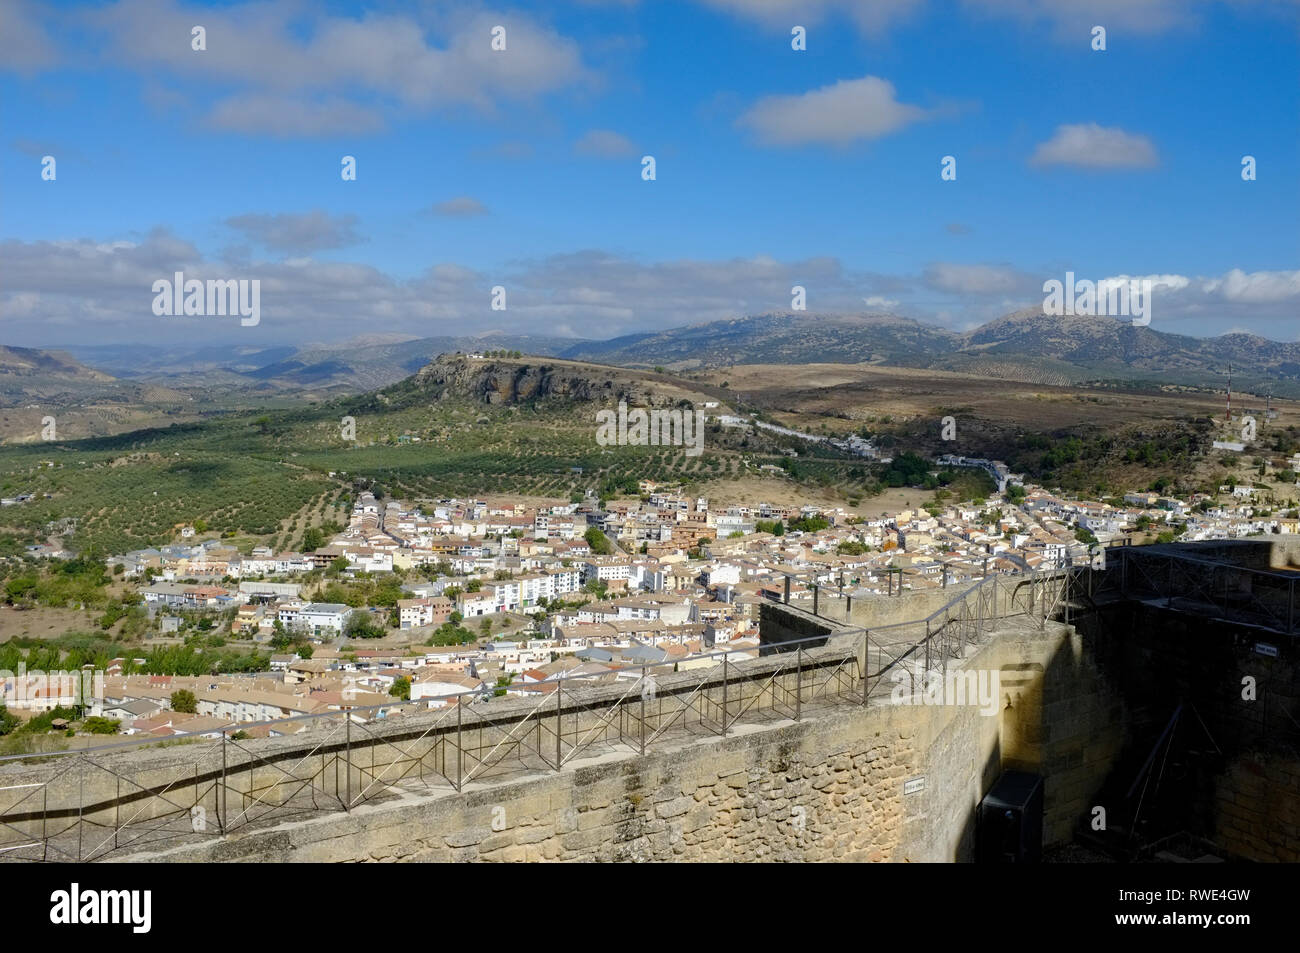 Blick auf Alcala la Real Stadt und die umliegende Landschaft von den Wänden der Hügel in der historischen Burg / Festung. Die Provinz Jaen, Andalusien, Spanien Stockfoto